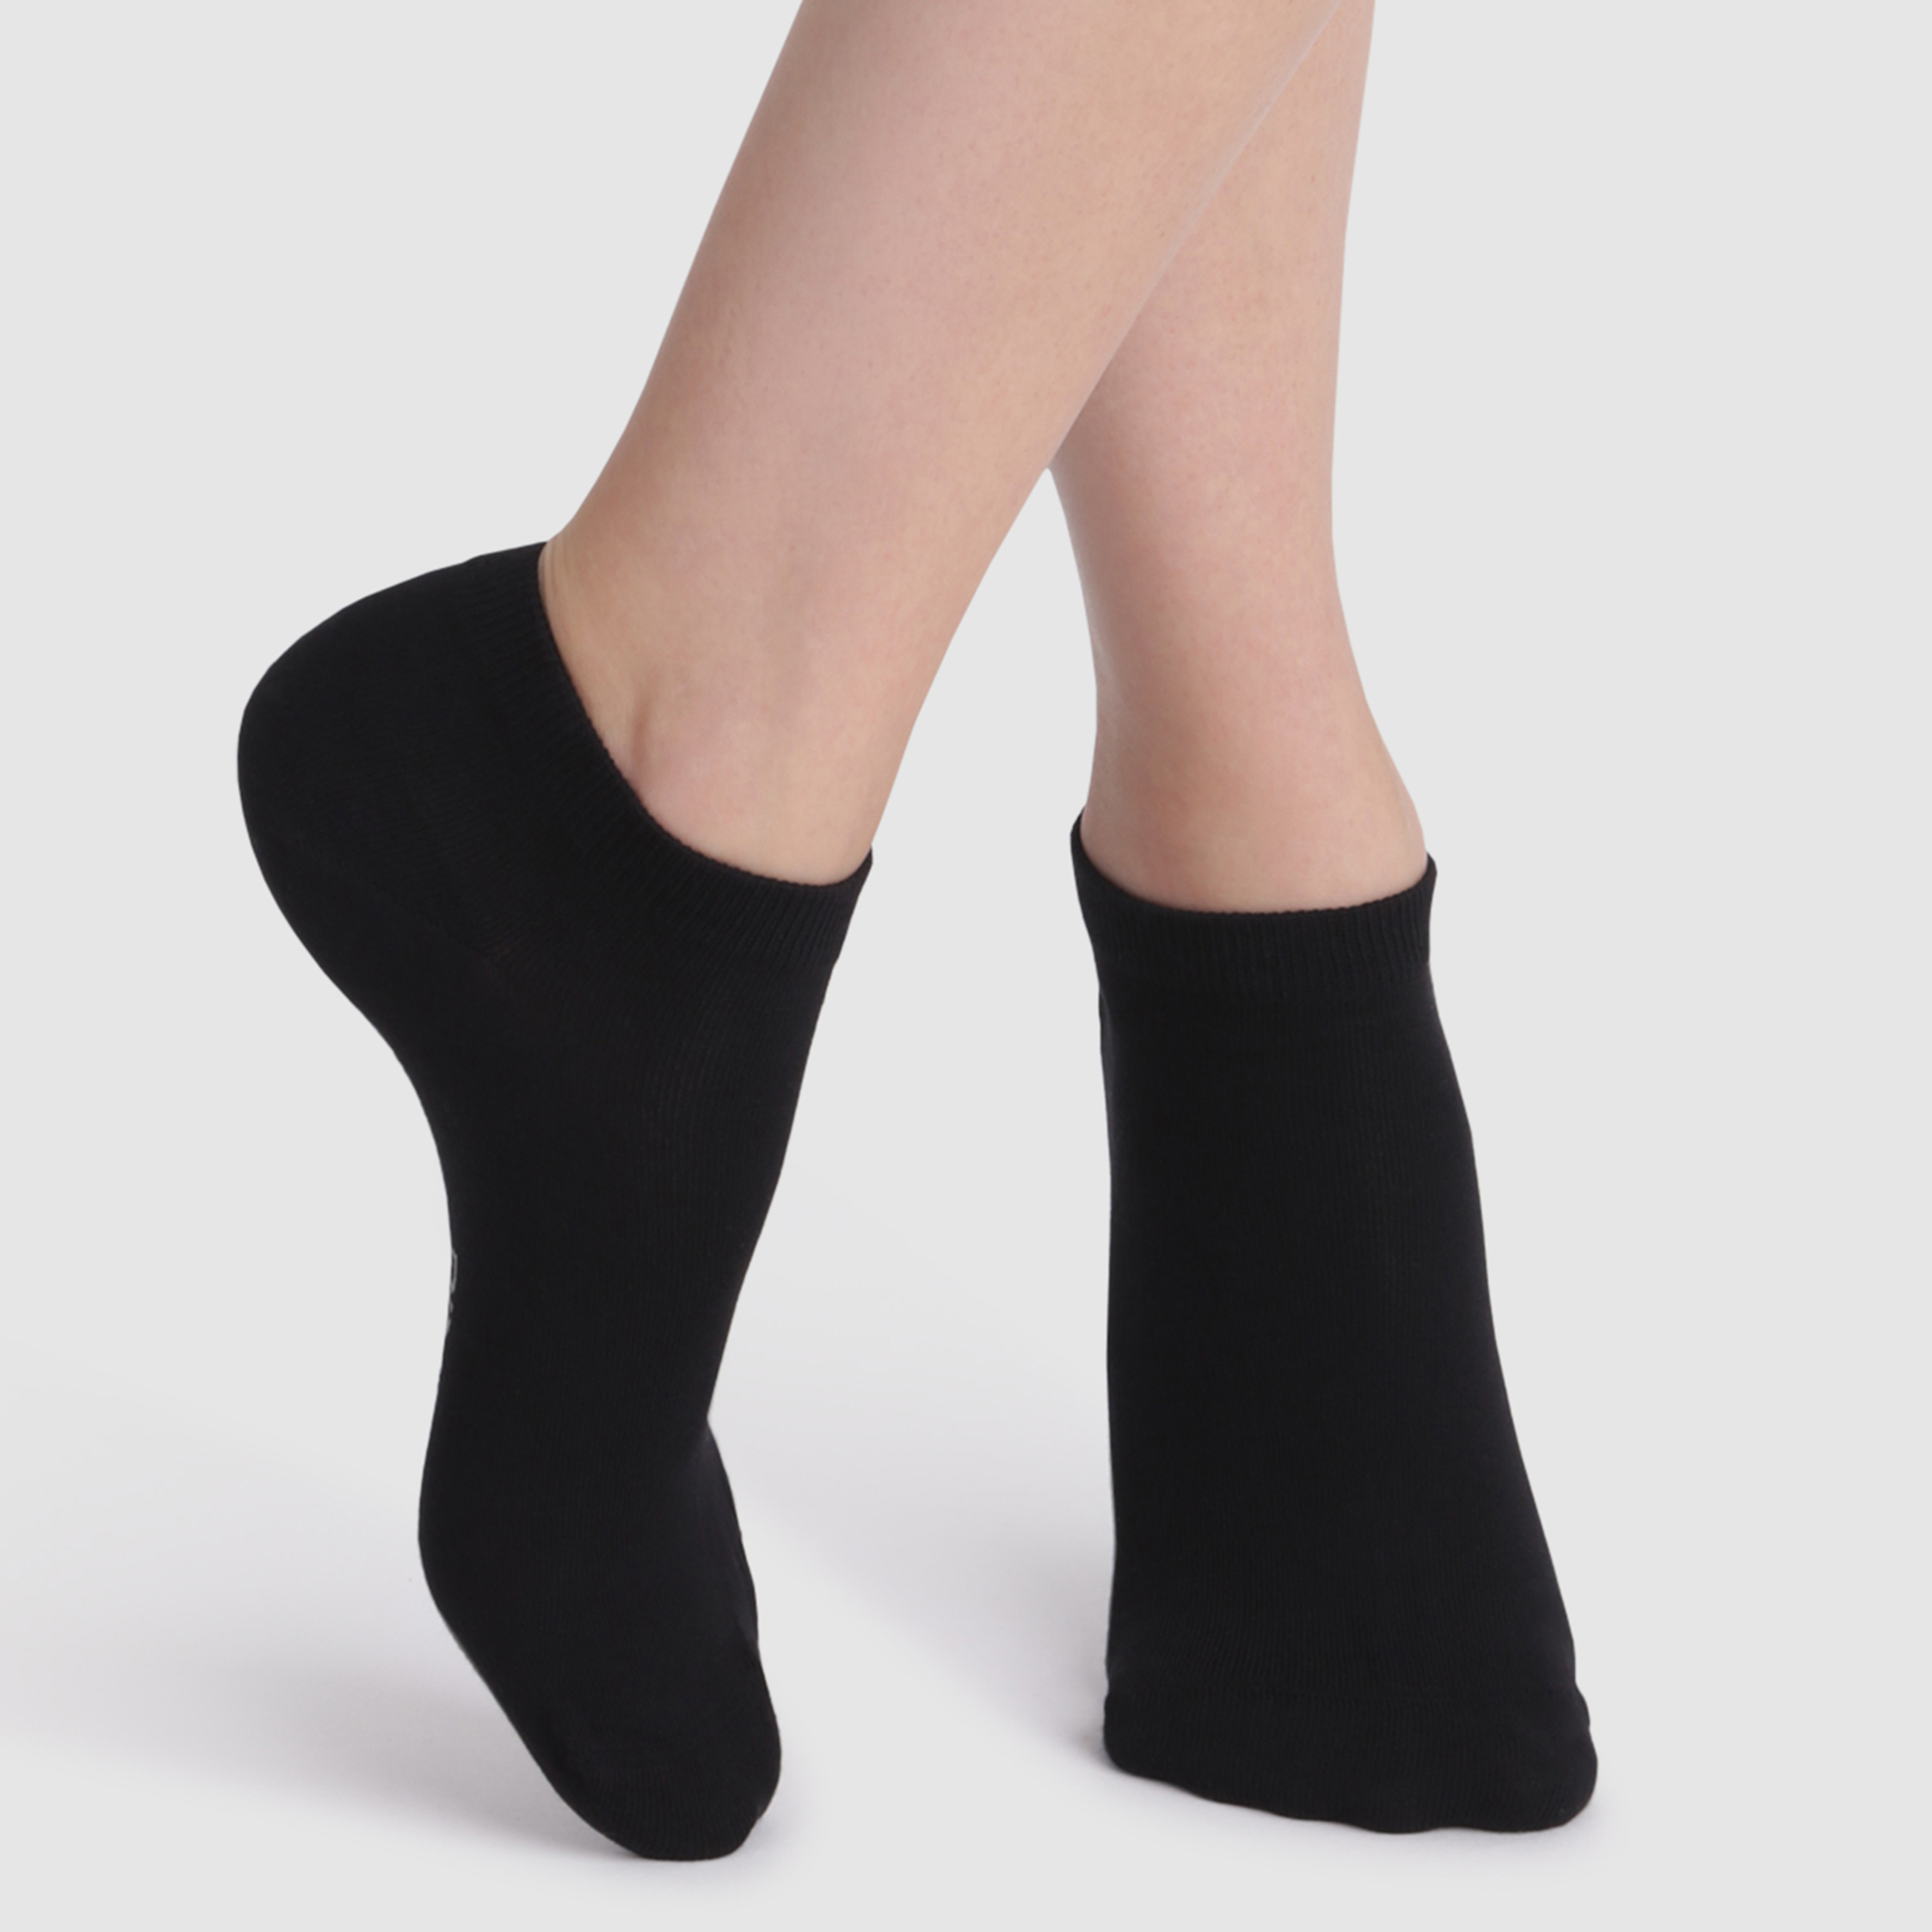 Jxrodekz Cobra Kai Comfort Cotton Ankle High Socks for Unisex